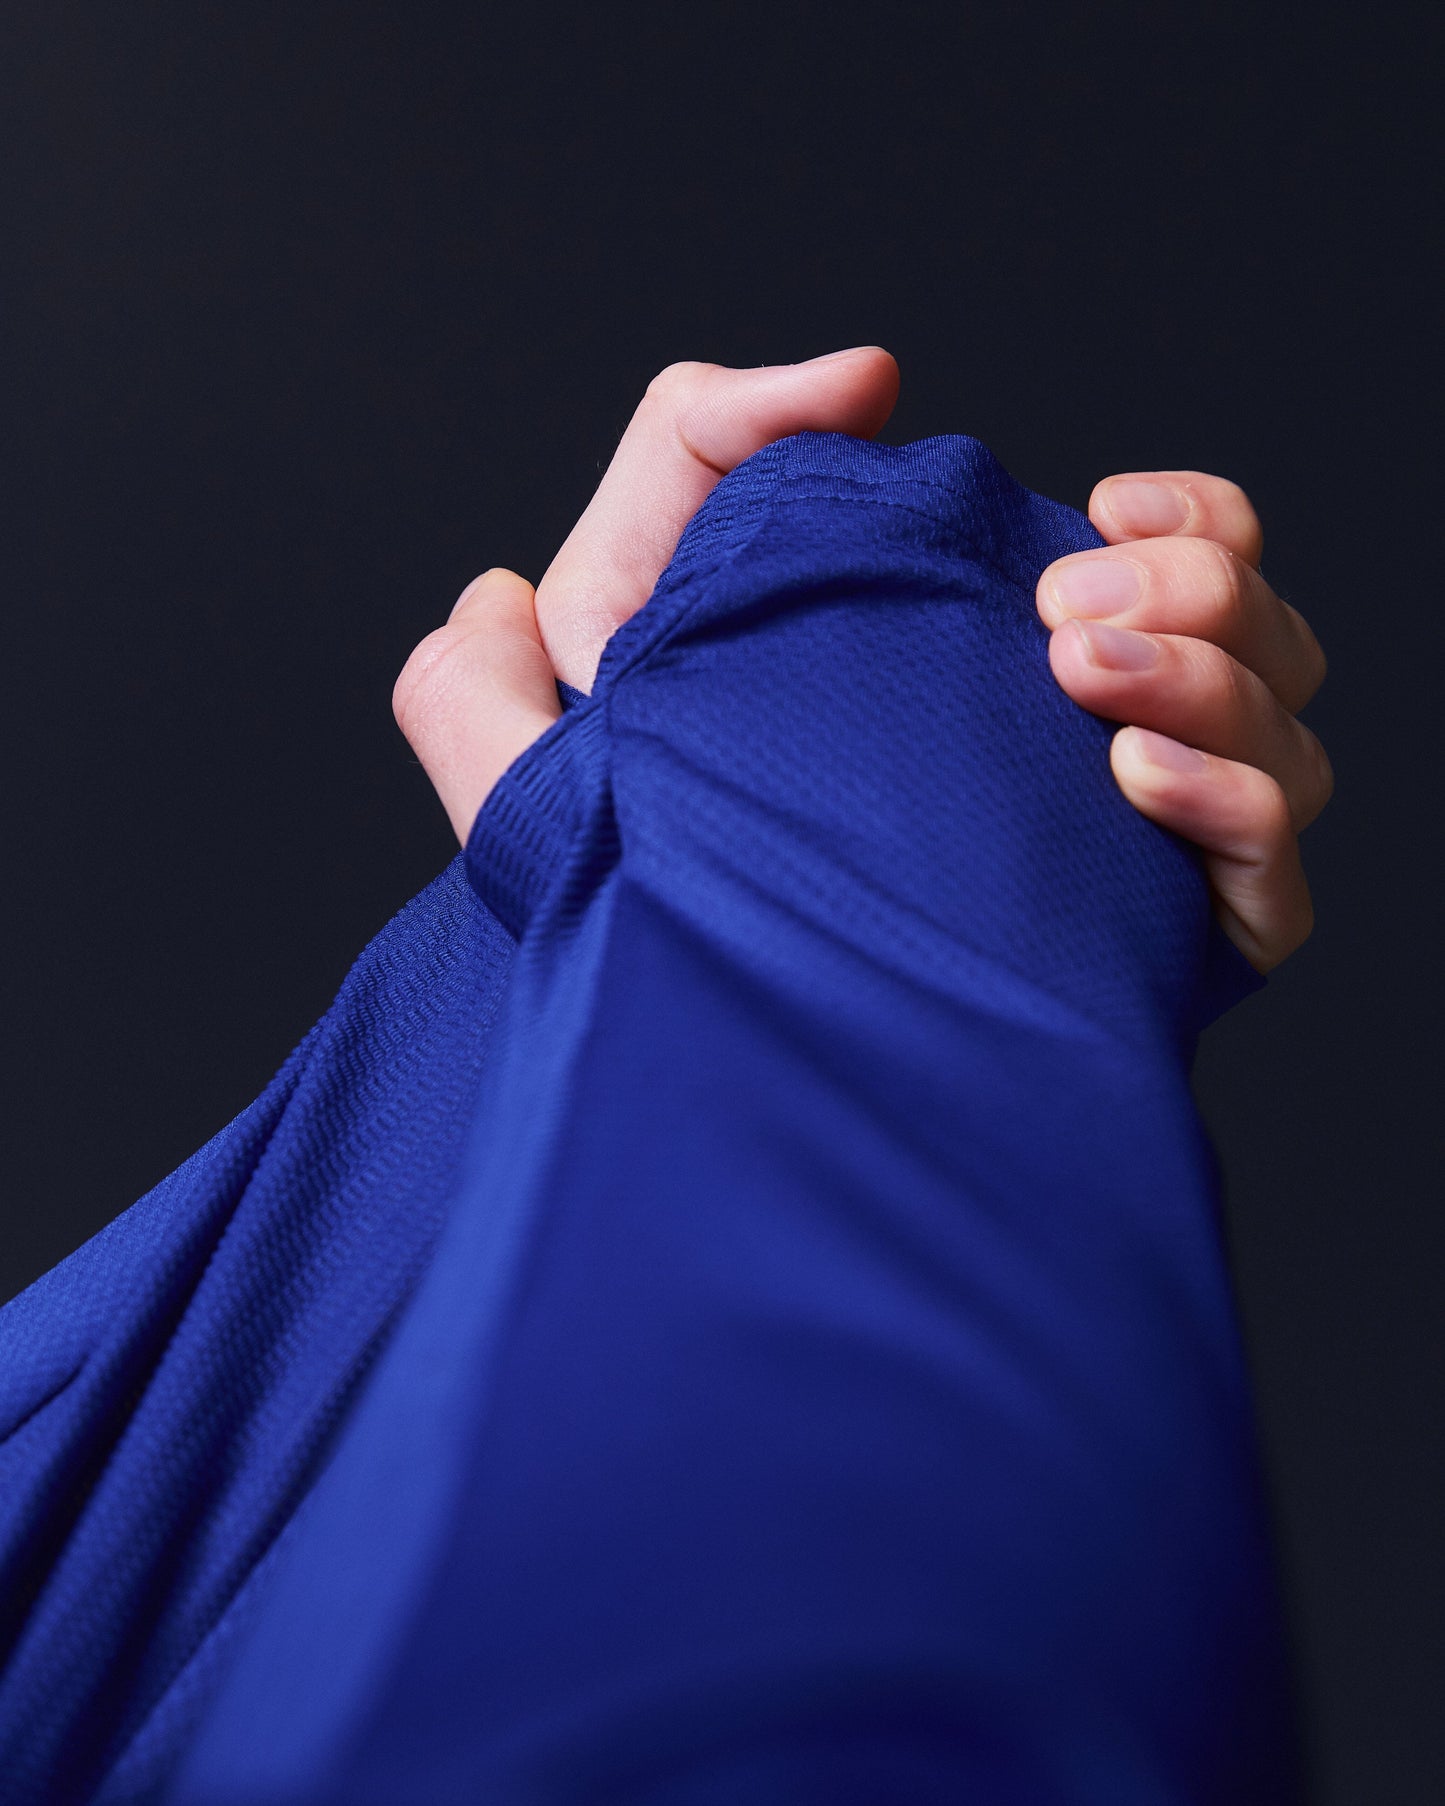 SUDU SRT LS 01 Run Long Sleeve Shirt - Belleweather Blue / Carmine Rose Long Sleeve Shirt